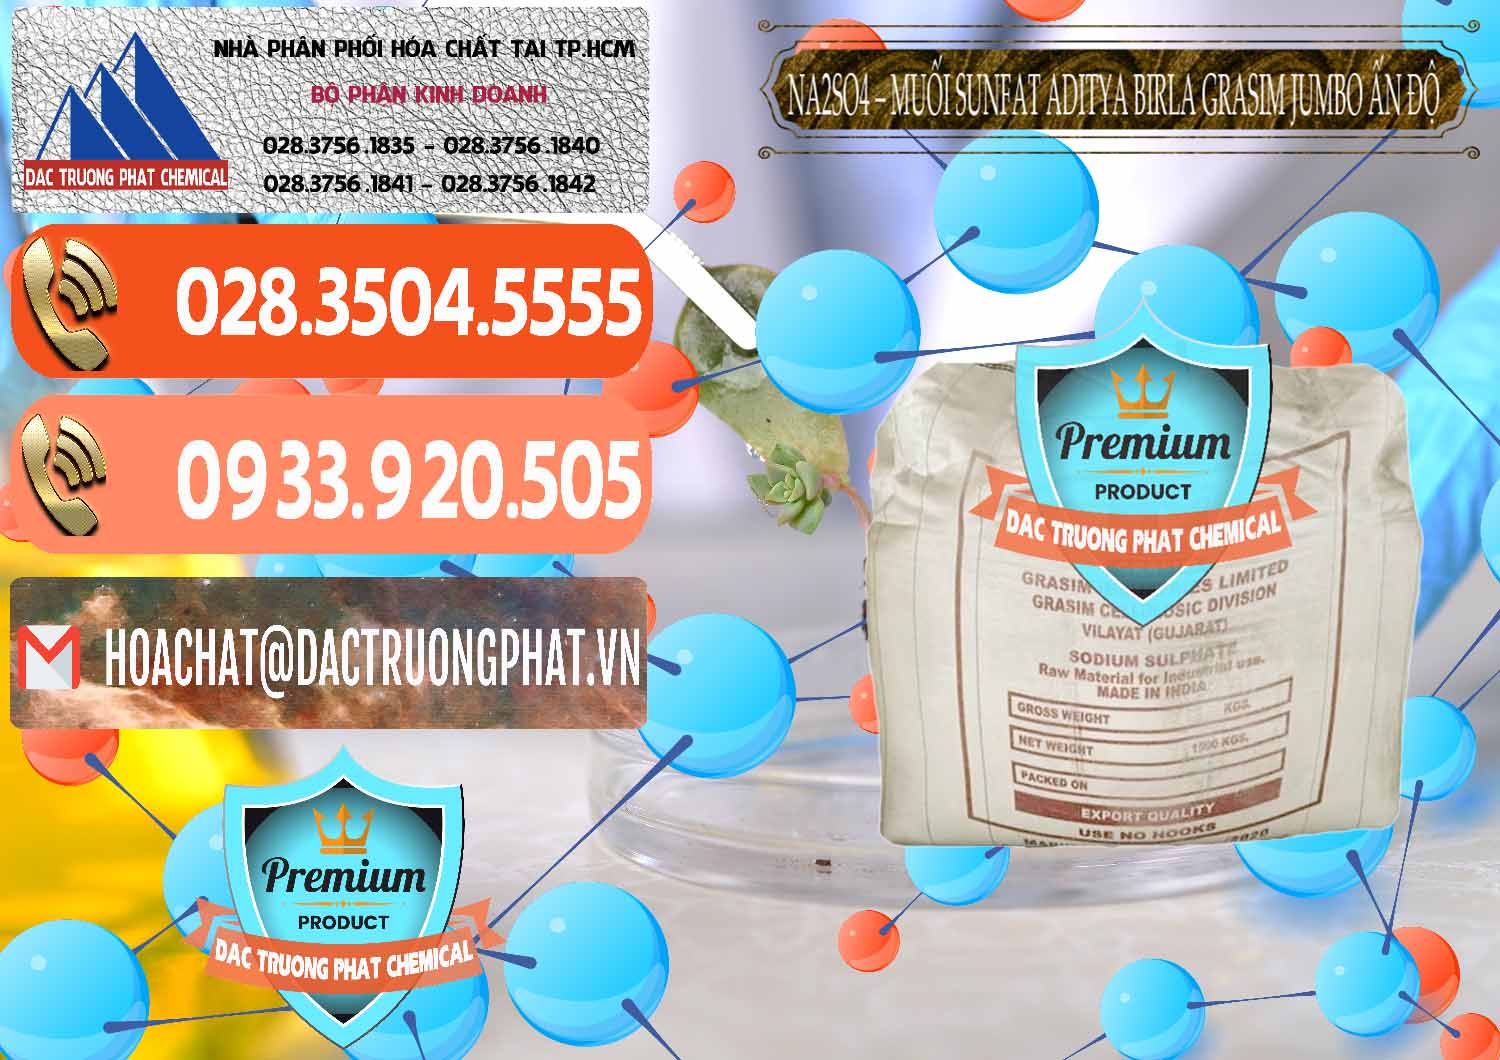 Đơn vị chuyên bán - cung ứng Sodium Sulphate - Muối Sunfat Na2SO4 Jumbo Bành Aditya Birla Grasim Ấn Độ India - 0357 - Nhà phân phối ( bán ) hóa chất tại TP.HCM - hoachatmientay.com